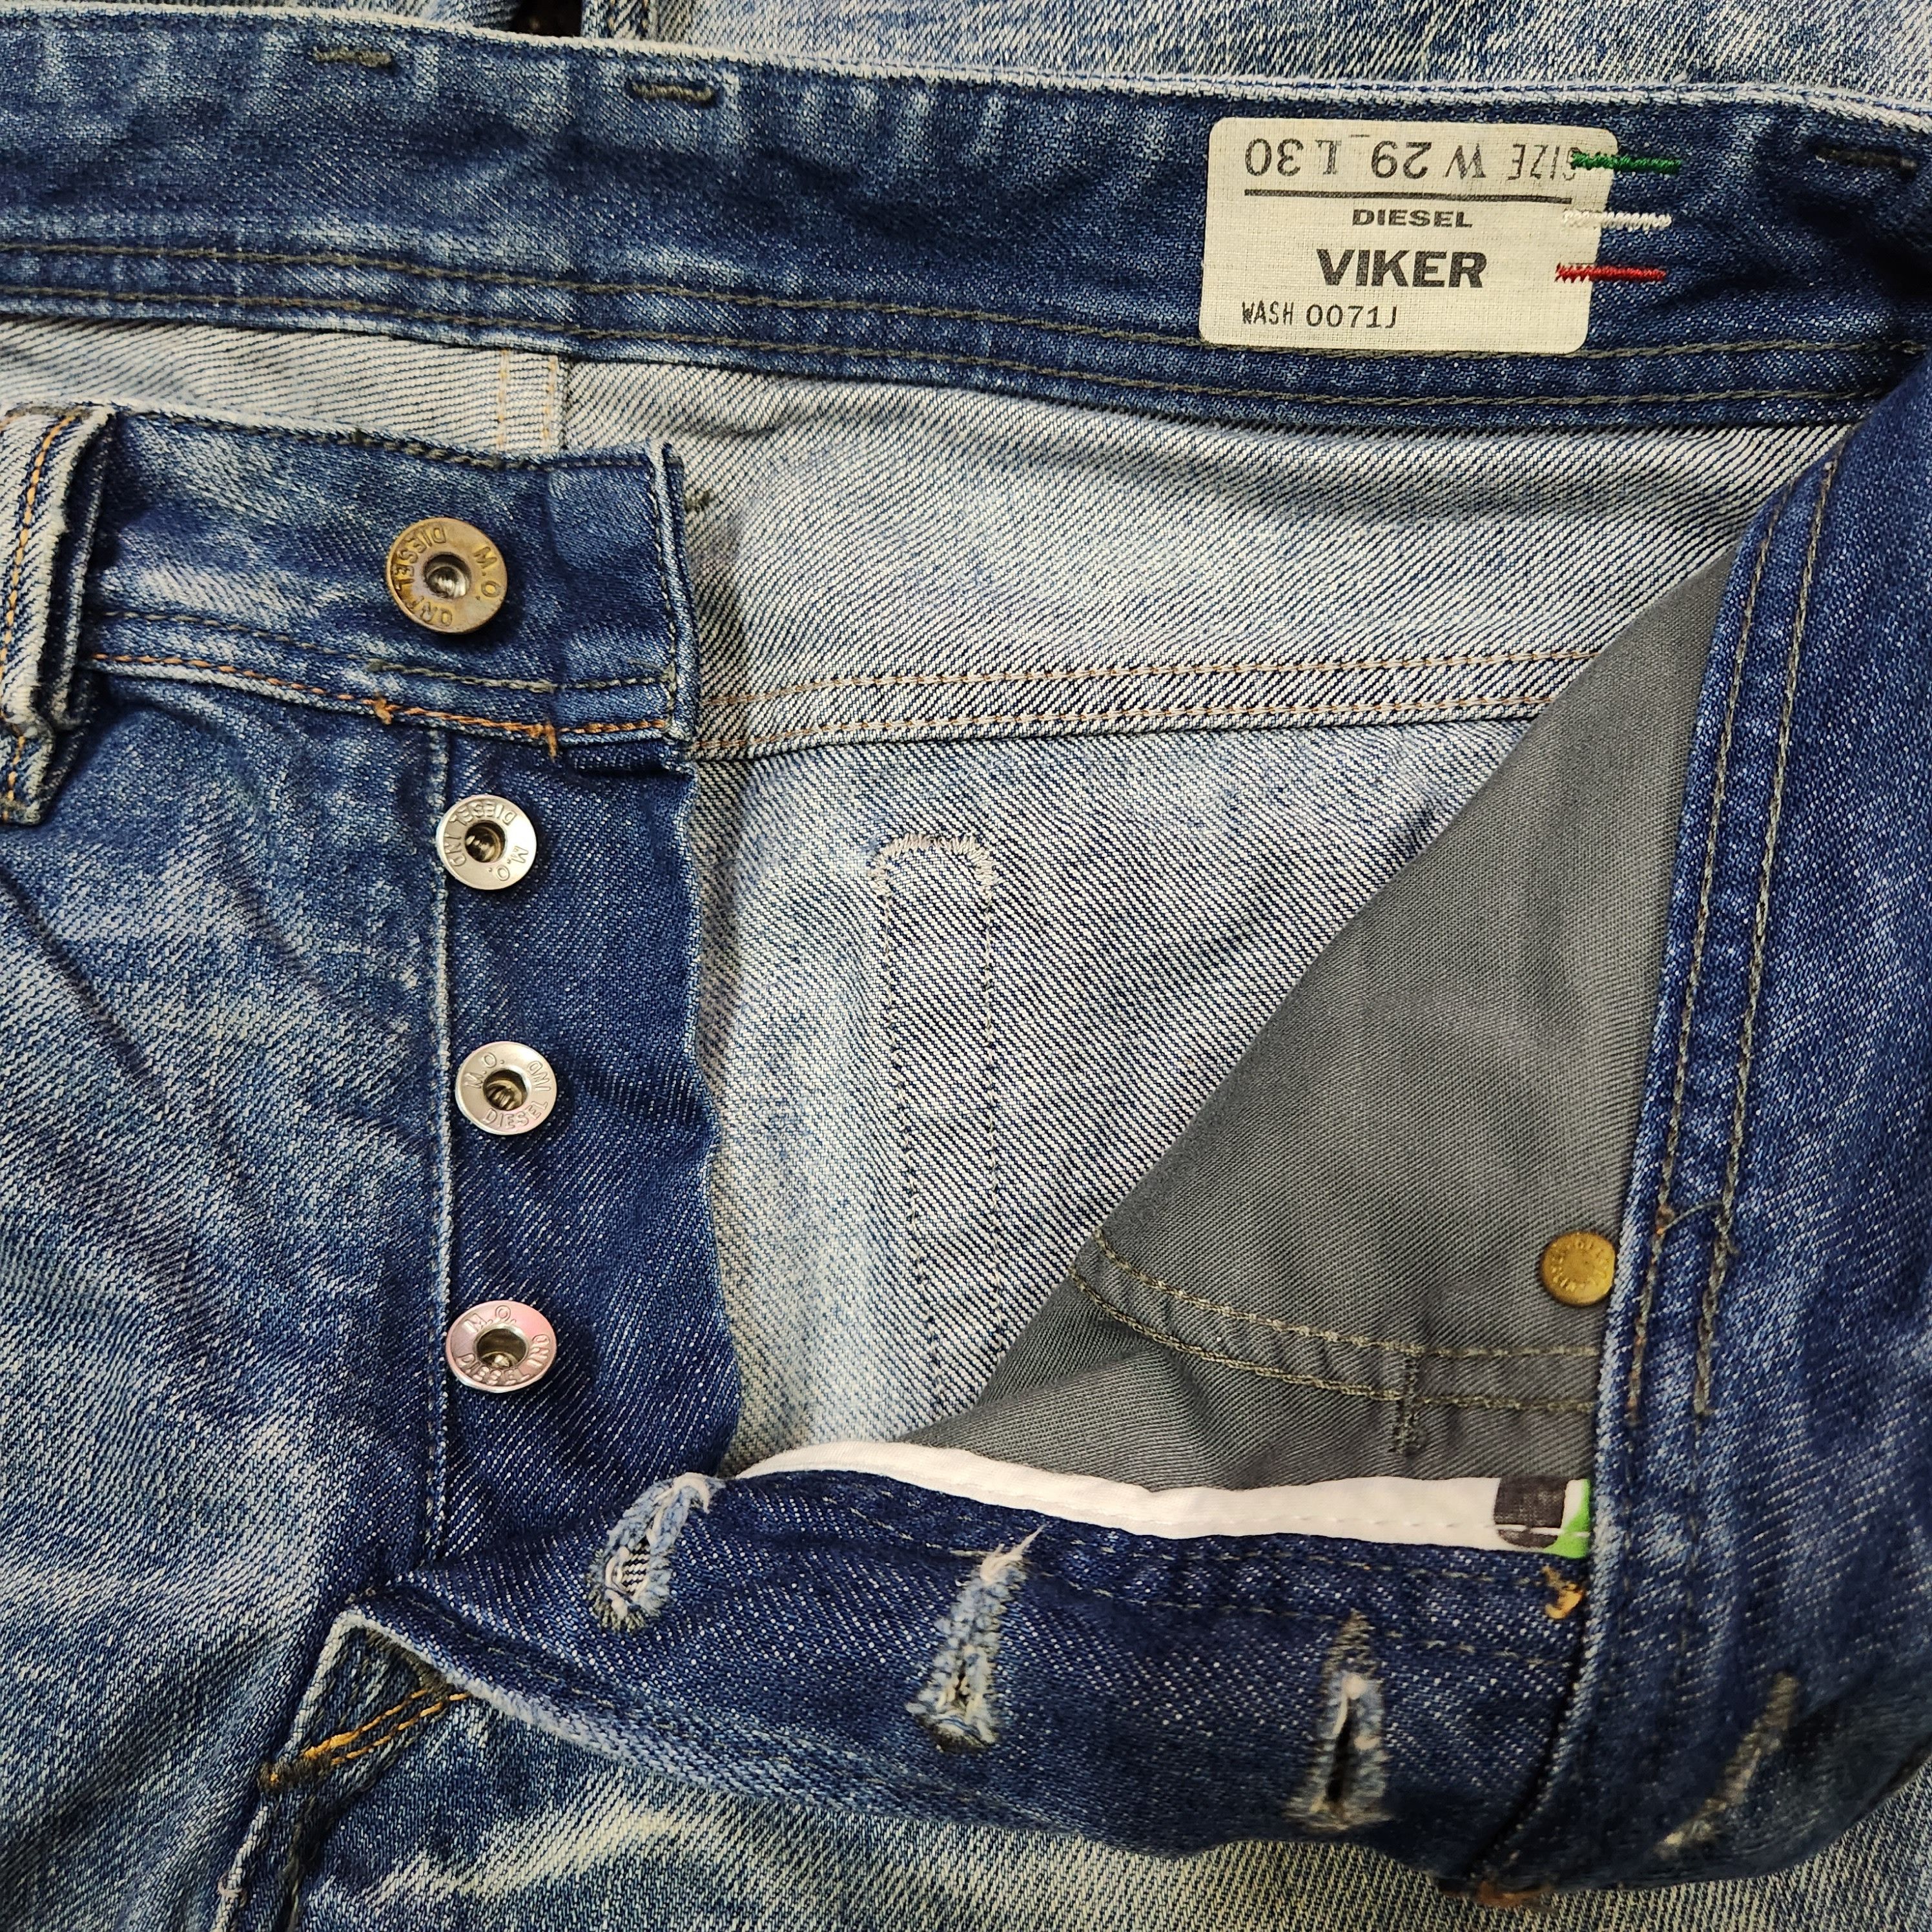 Distressed Denim Diesel Viker Jeans Made In Italy - 4